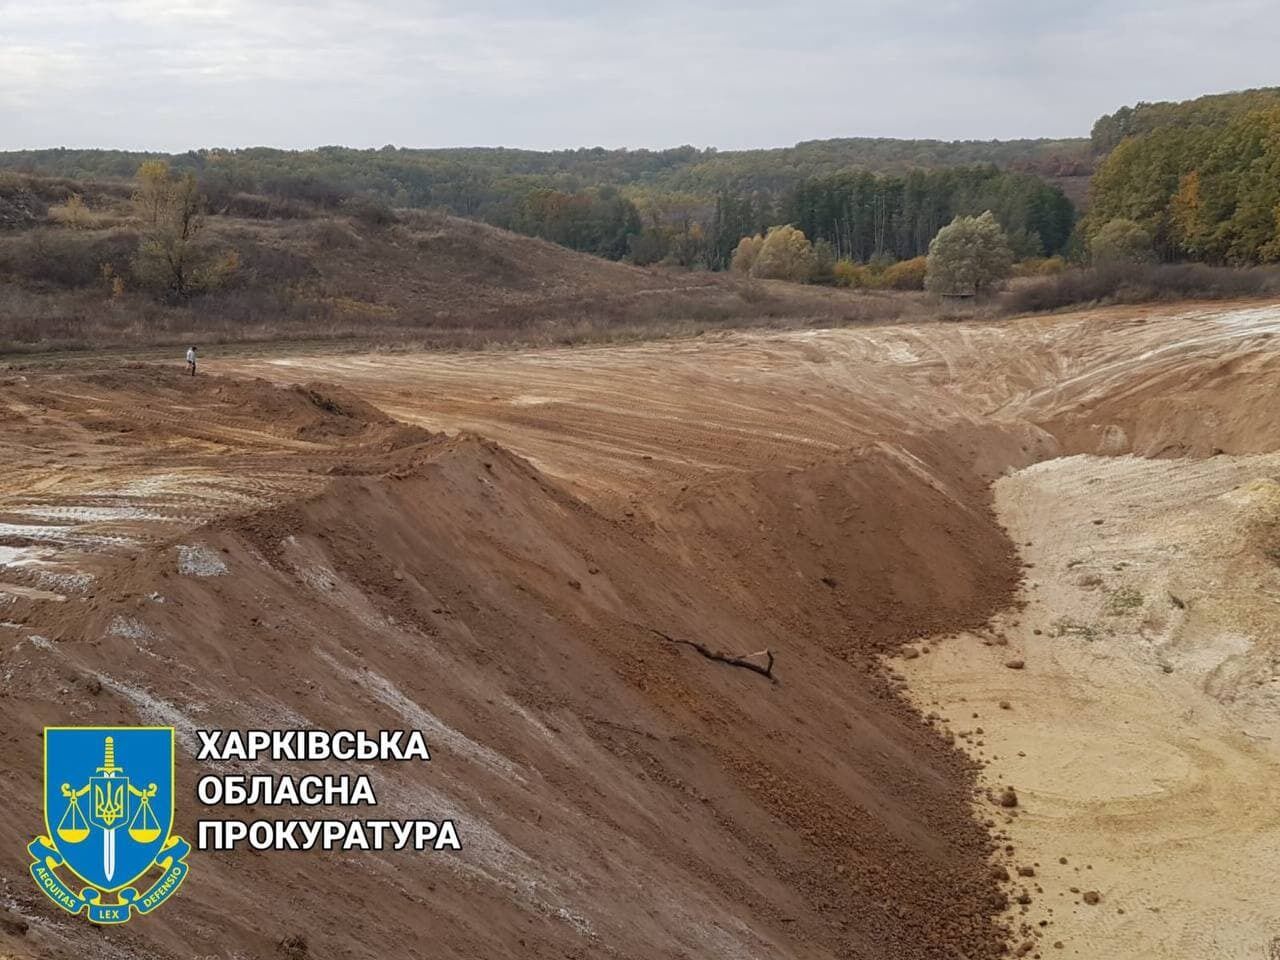 Незаконний видобуток будівельного піску зі збитками у 17 млн грн – підозрюється голова фермерського господарства (ФОТО)